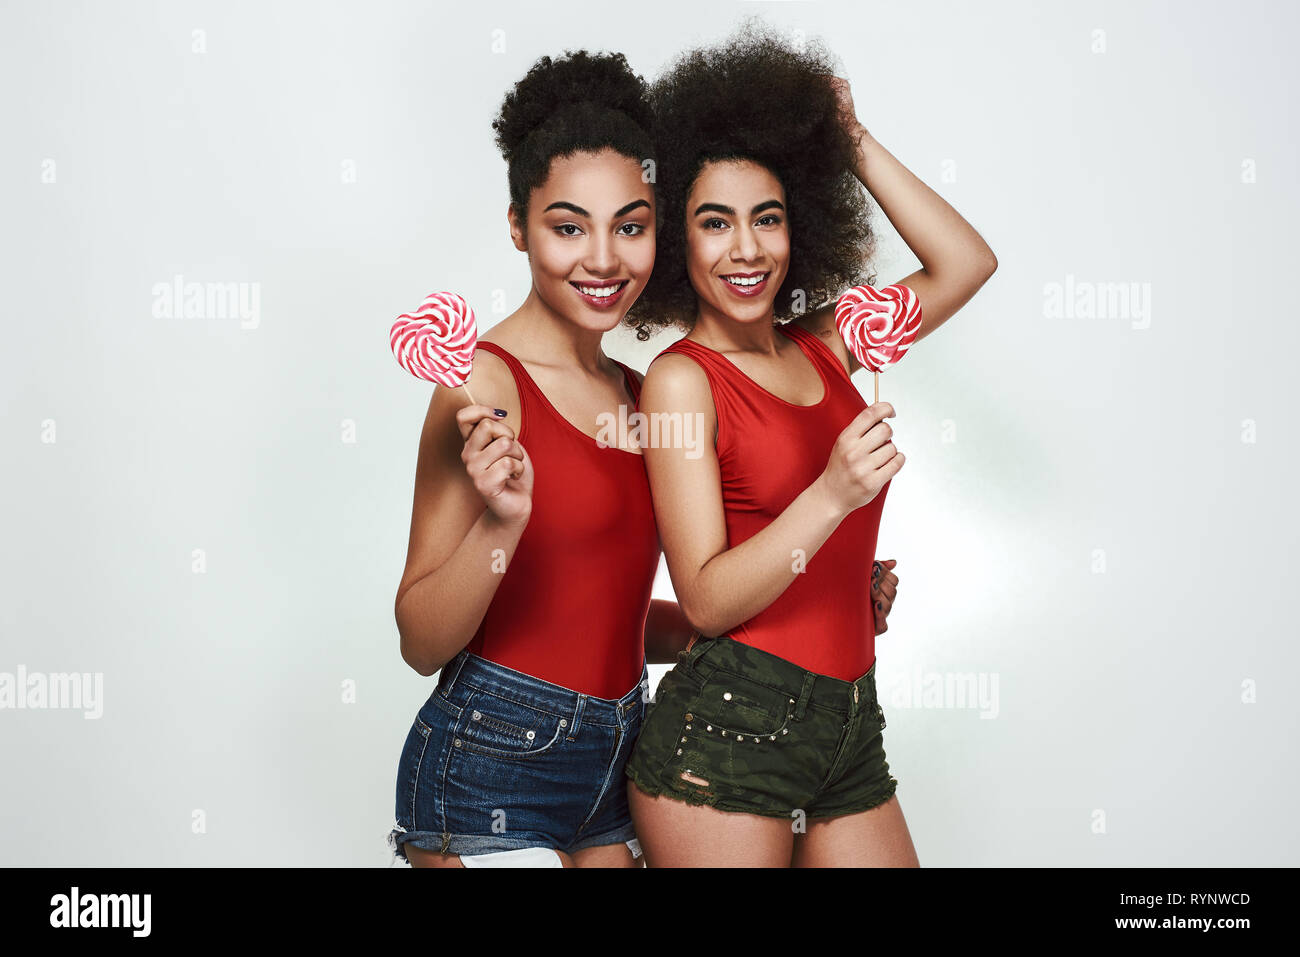 Süsse Schönheit. Zwei schöne junge afro-amerikanische Frauen im Sommer Kleidung holding Lutscher geformte Herzen und lächelnd, während gegen grauen Hintergrund stehend Stockfoto